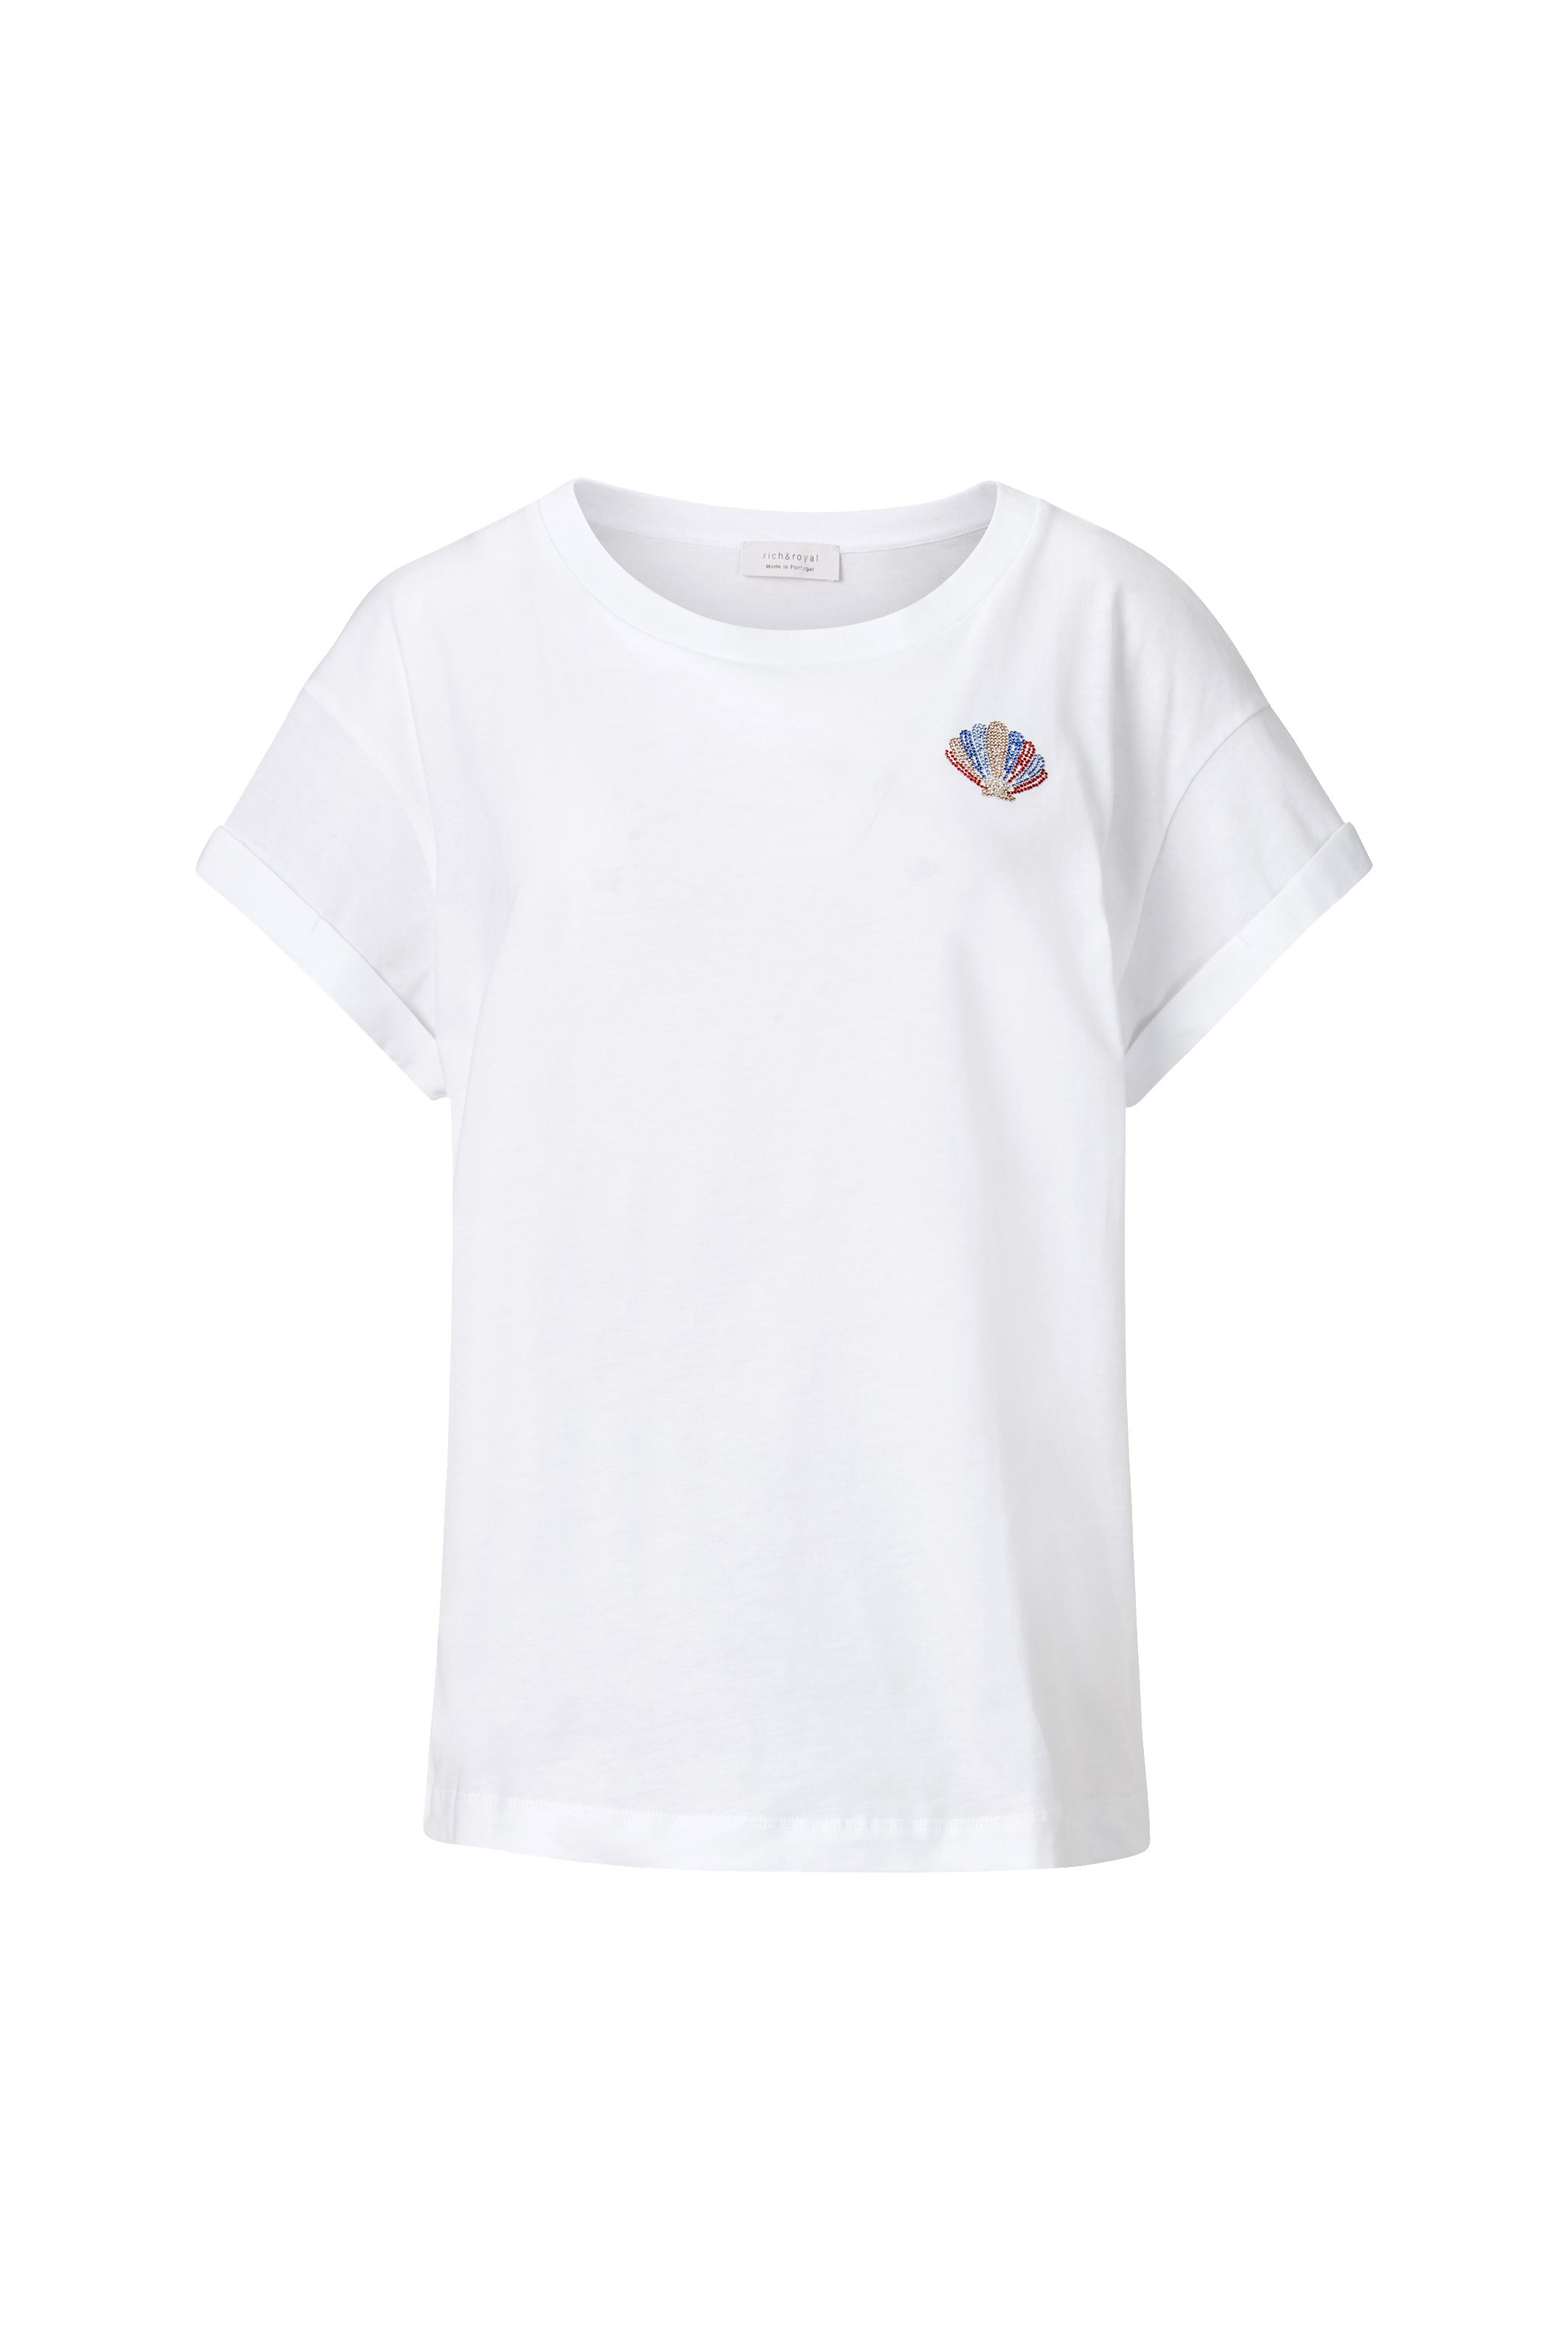 RICH & ROYAL T-Shirt 10761689